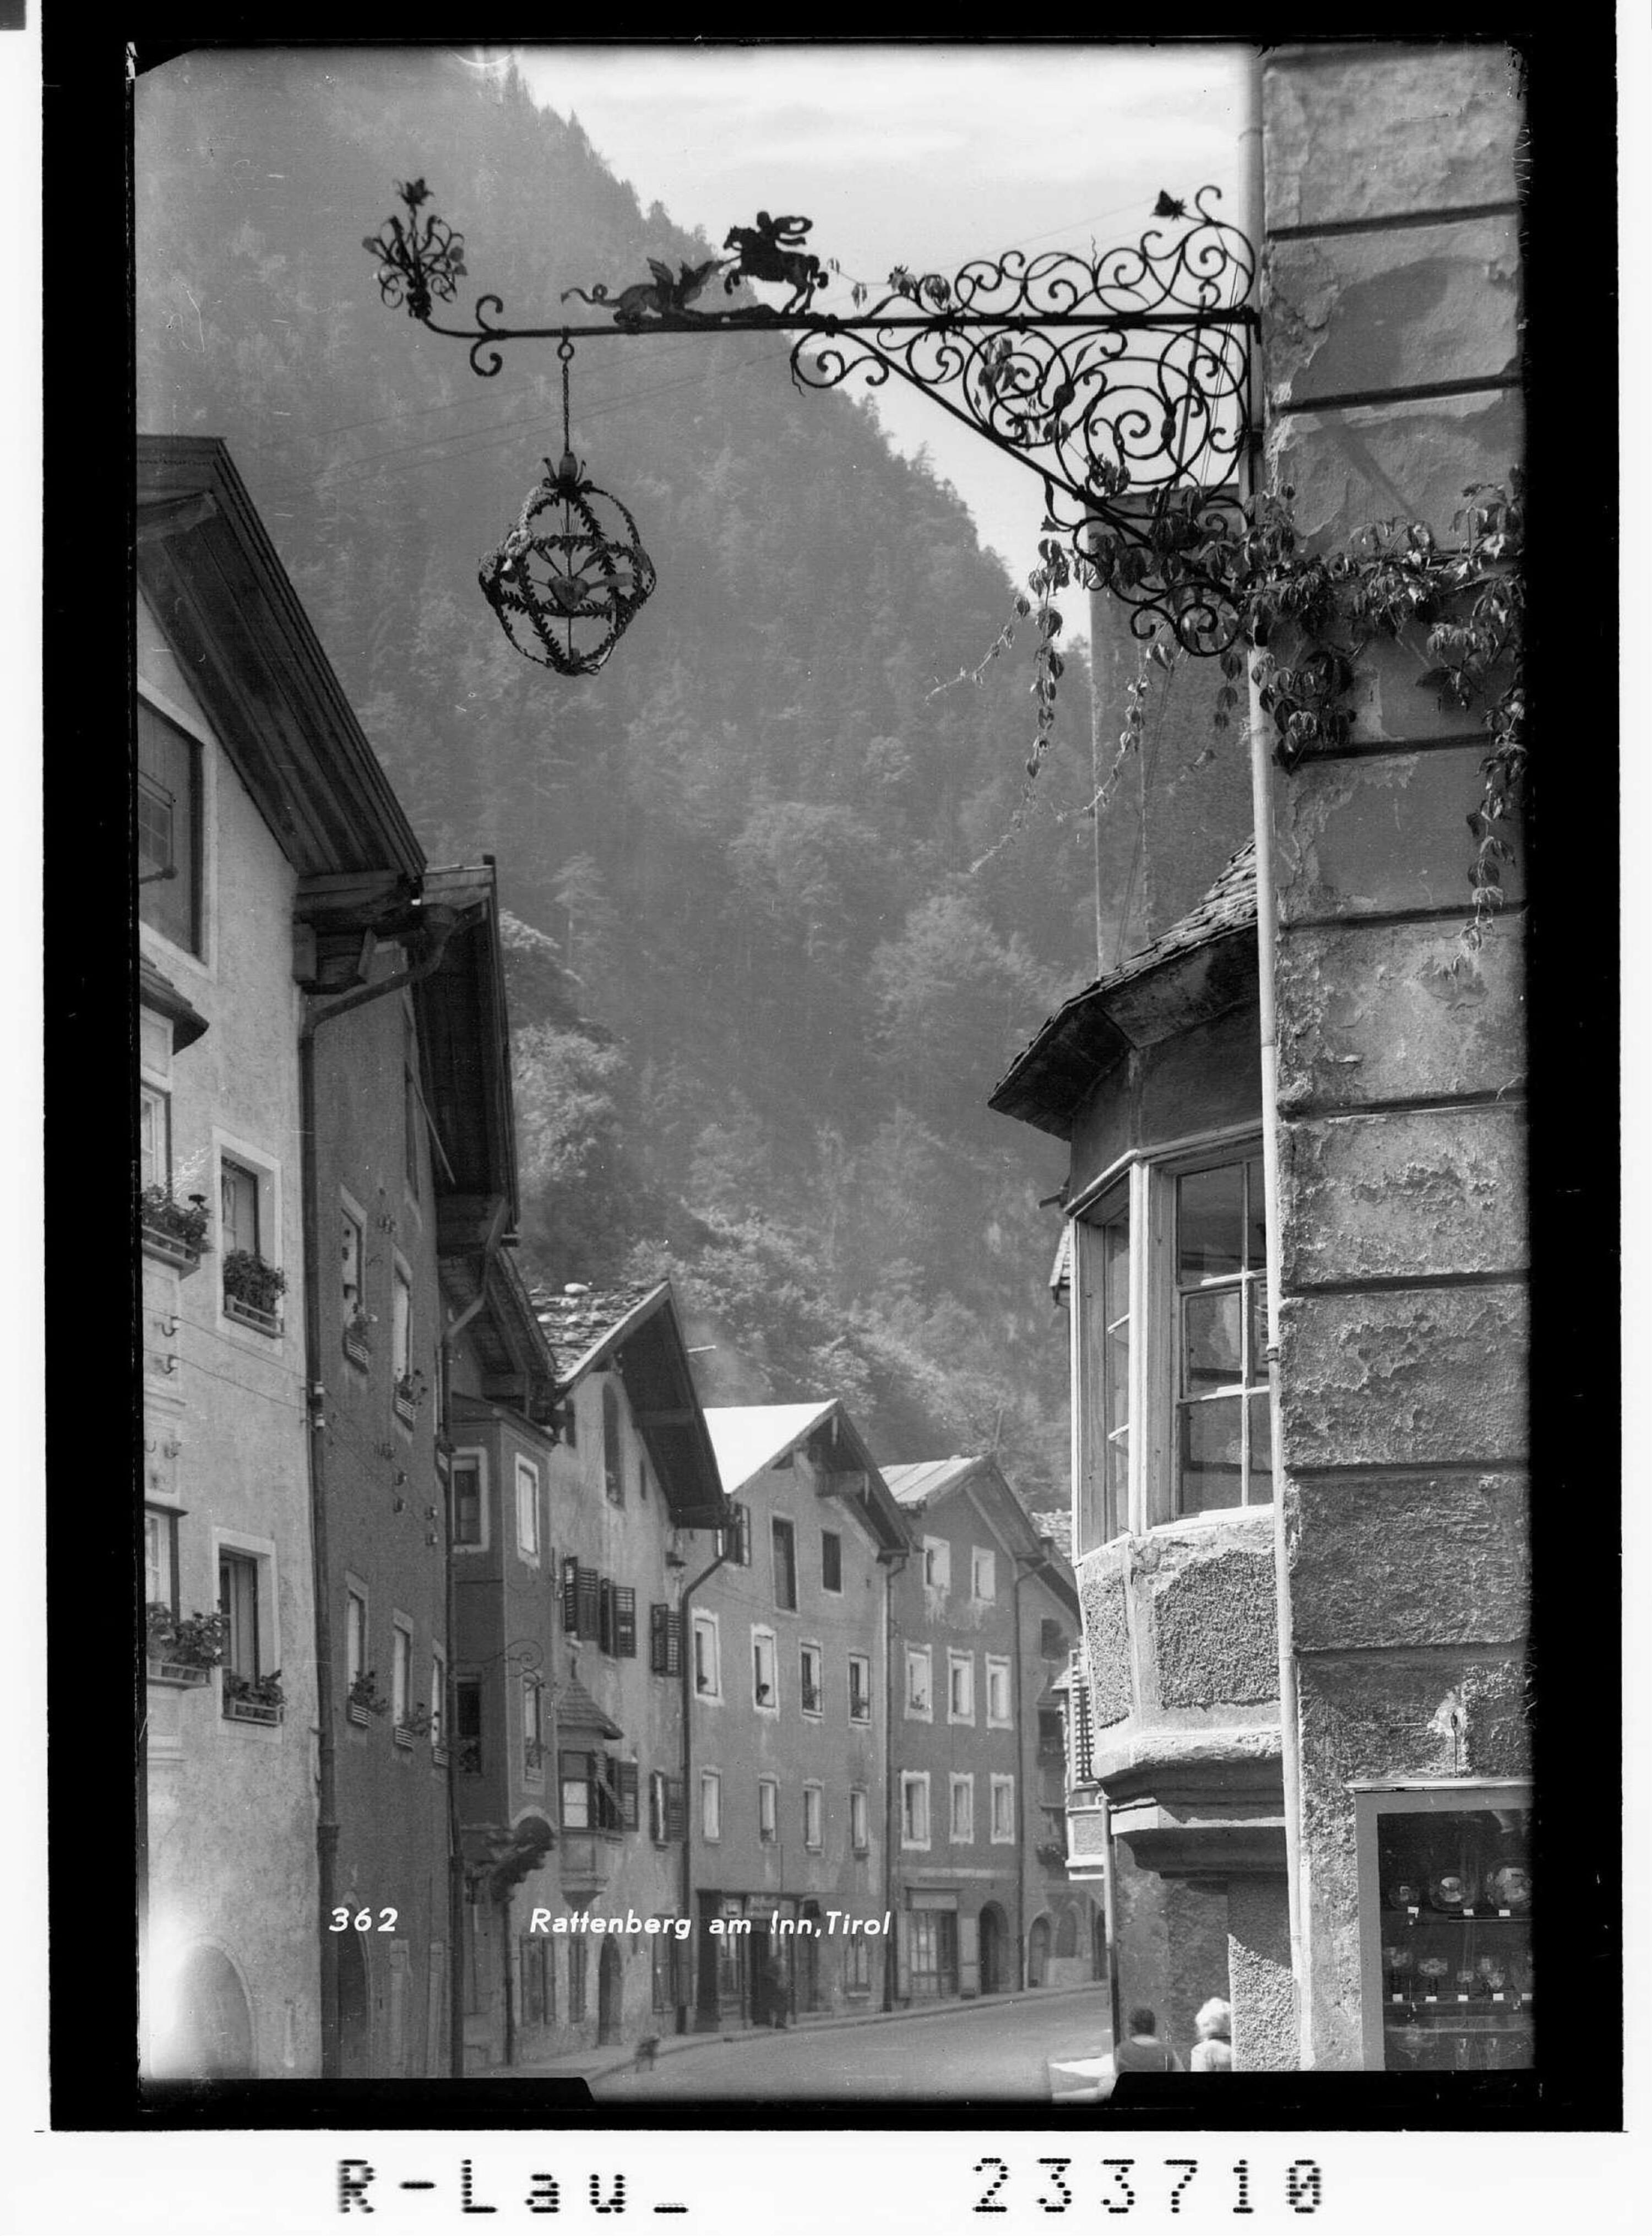 Rattenberg am Inn, Tirol></div>


    <hr>
    <div class=